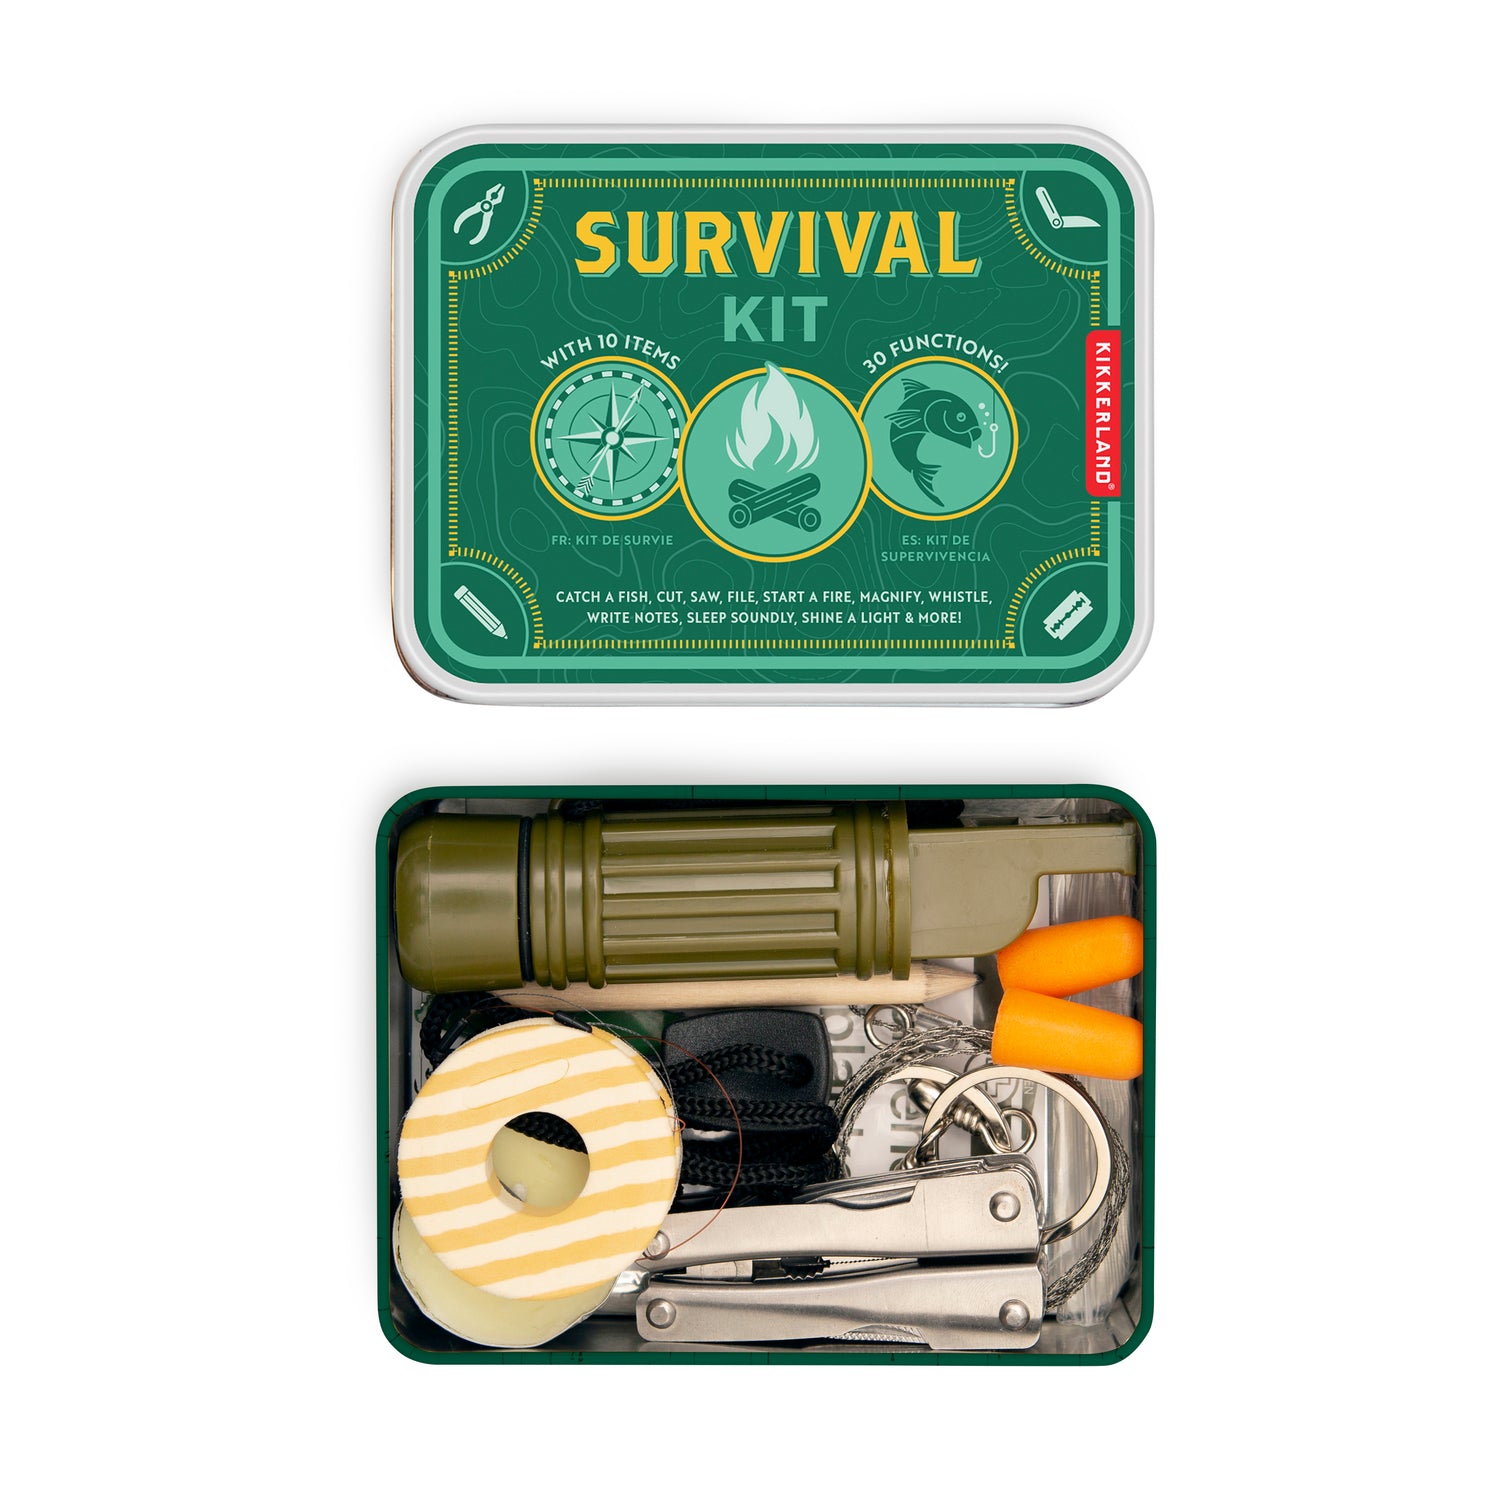 Kit de supervivencia – Military Shop